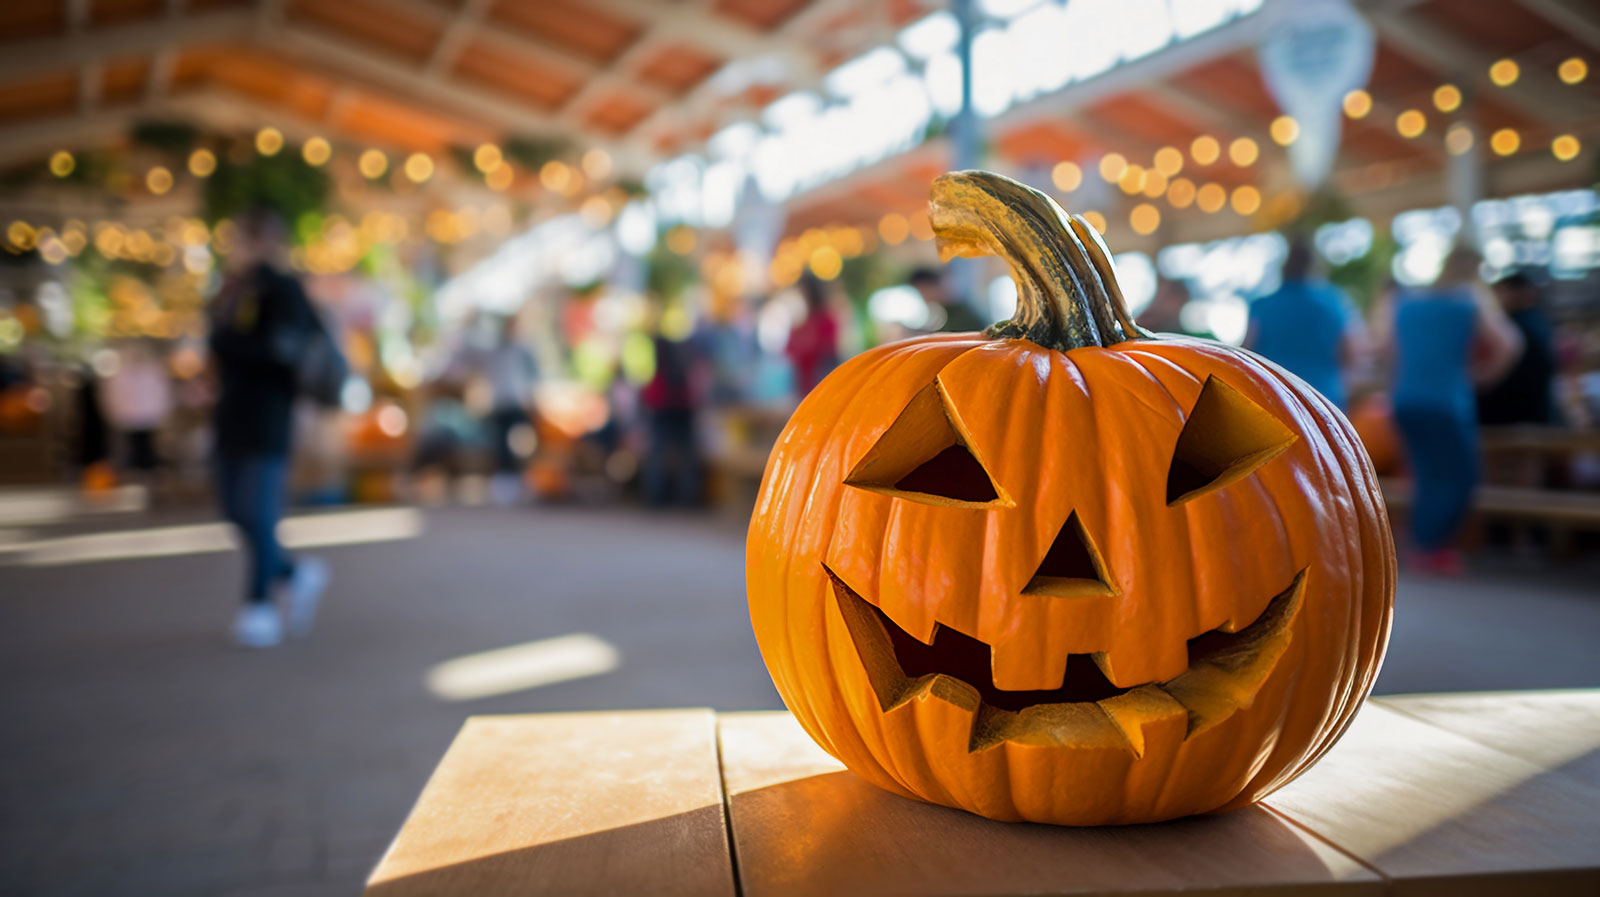 Jack-o-lantern and a Halloween fair